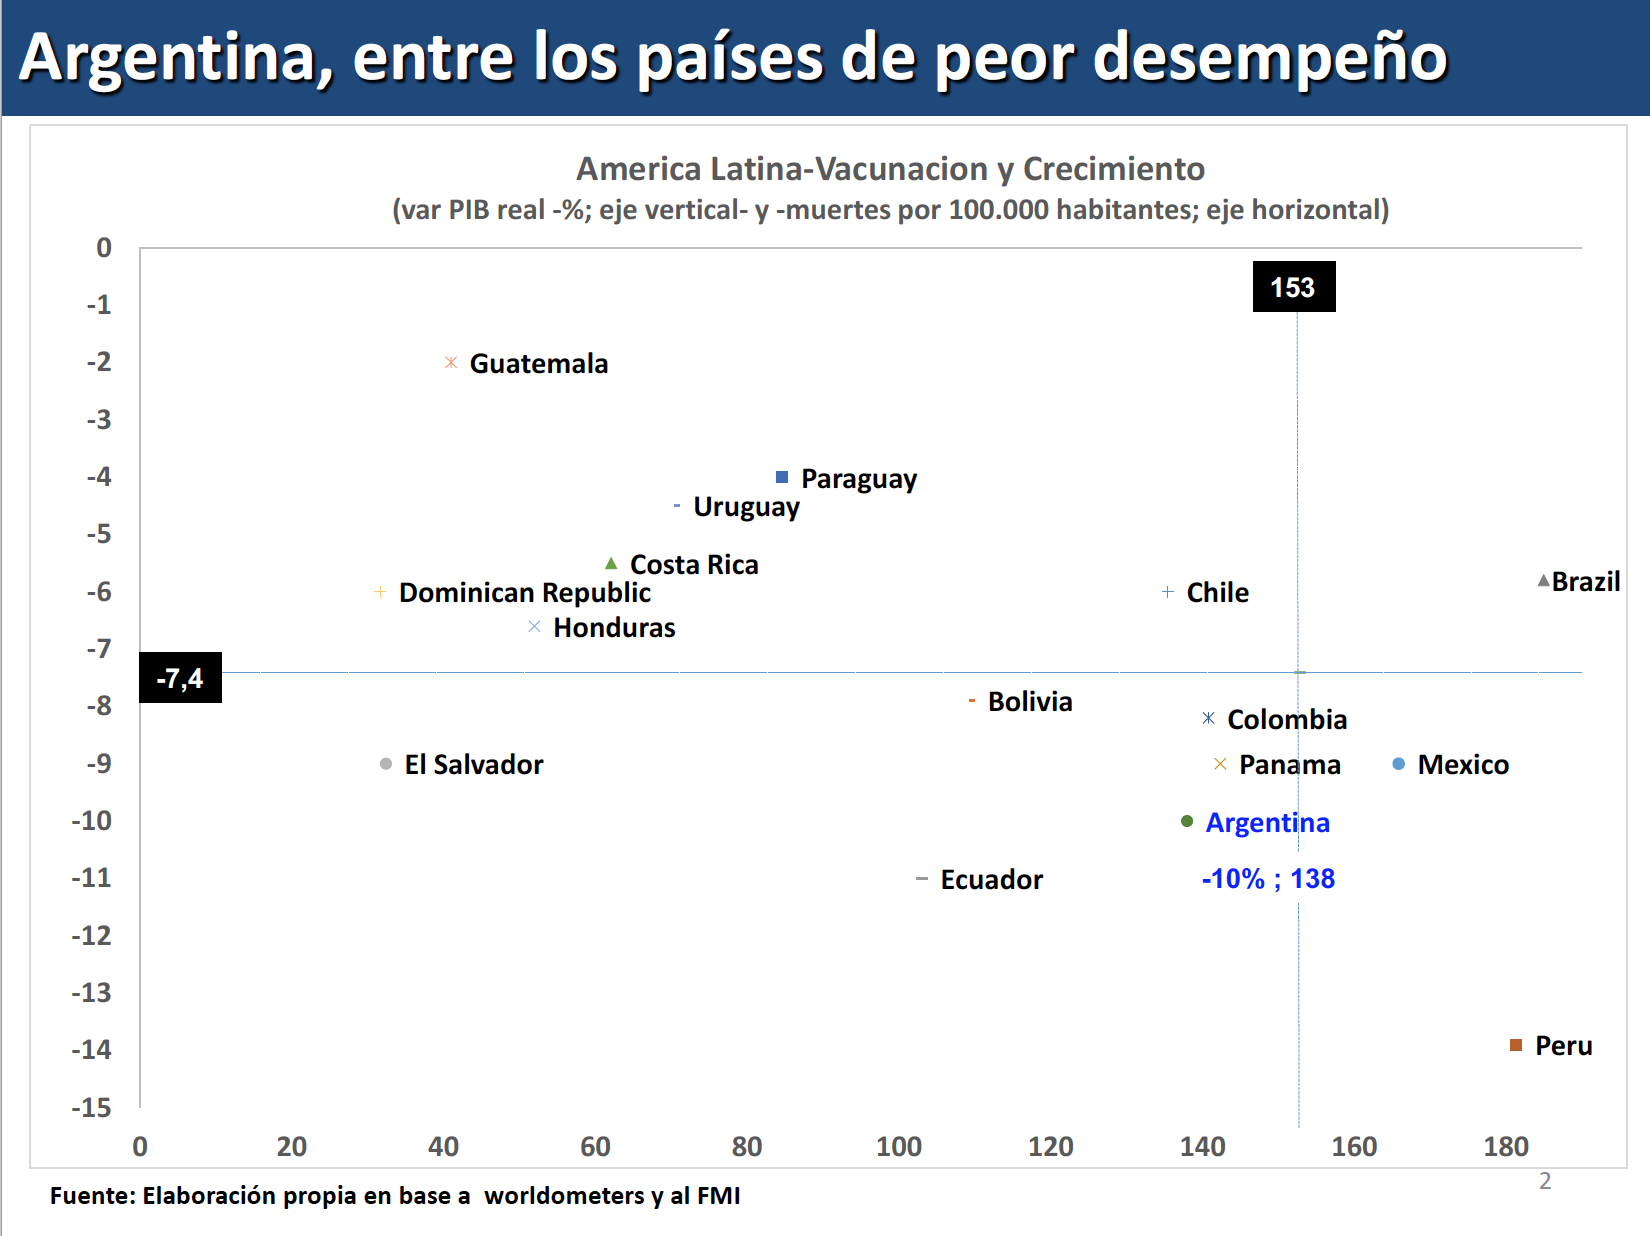 Argentina mal desempeño en vacunación y crecimiento durante pandemia Covid